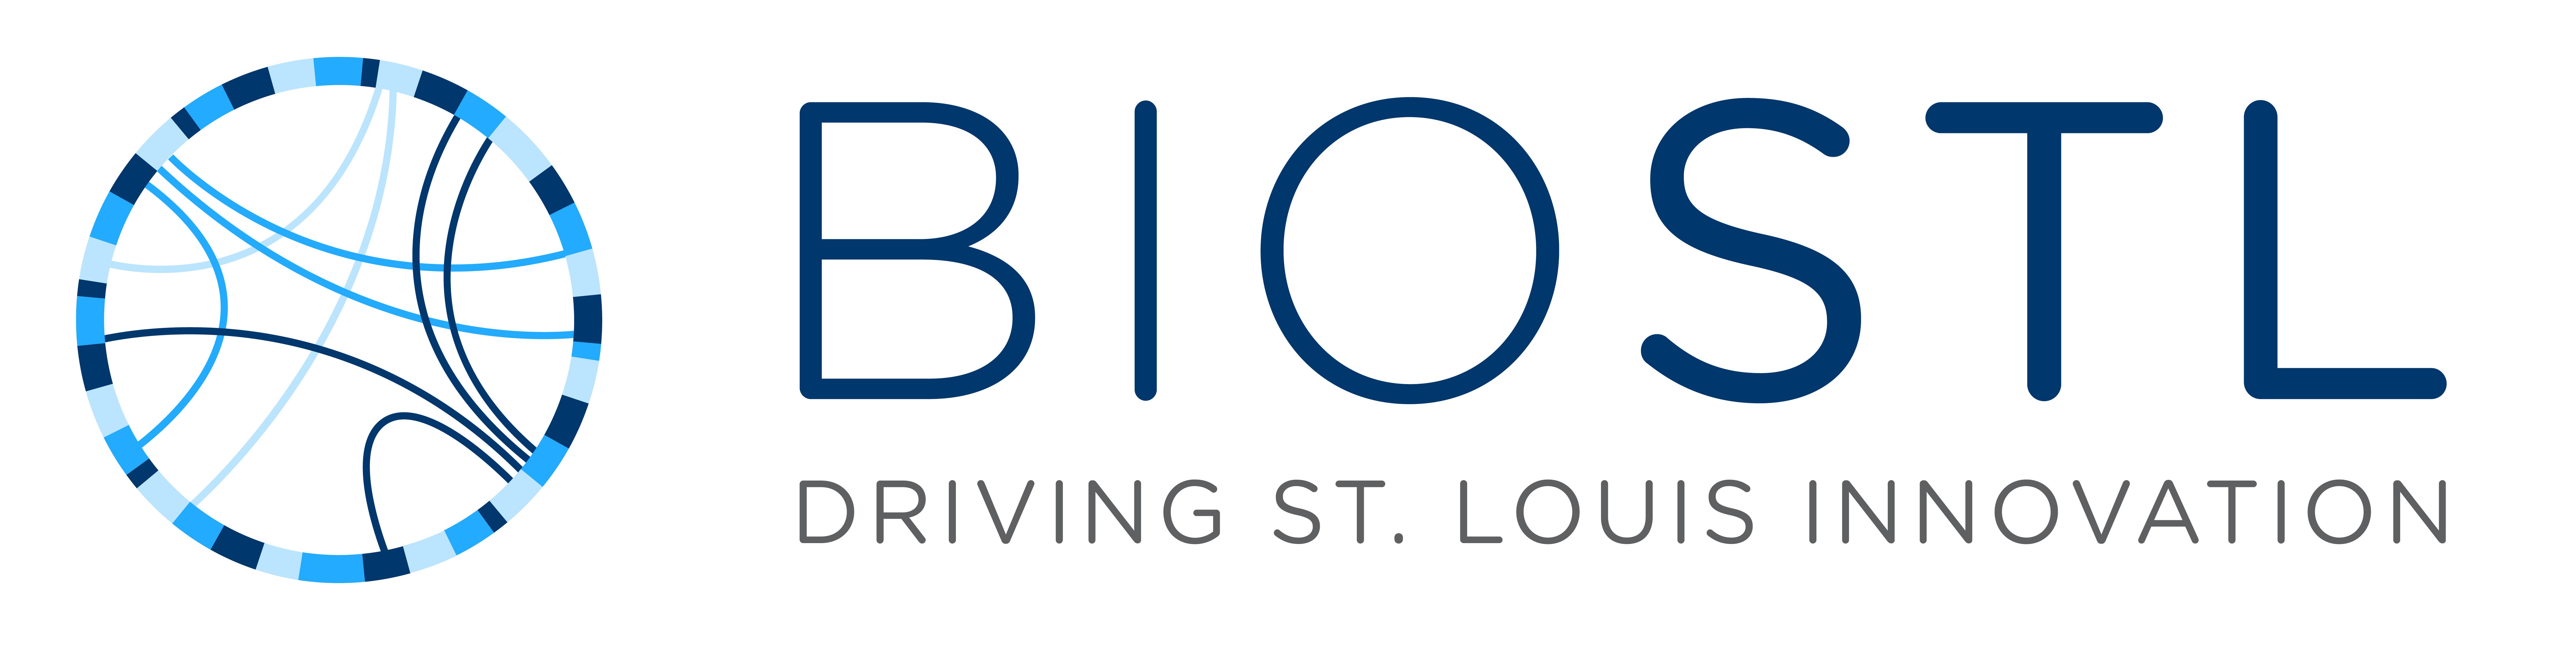 BIOSTL Logo (2)